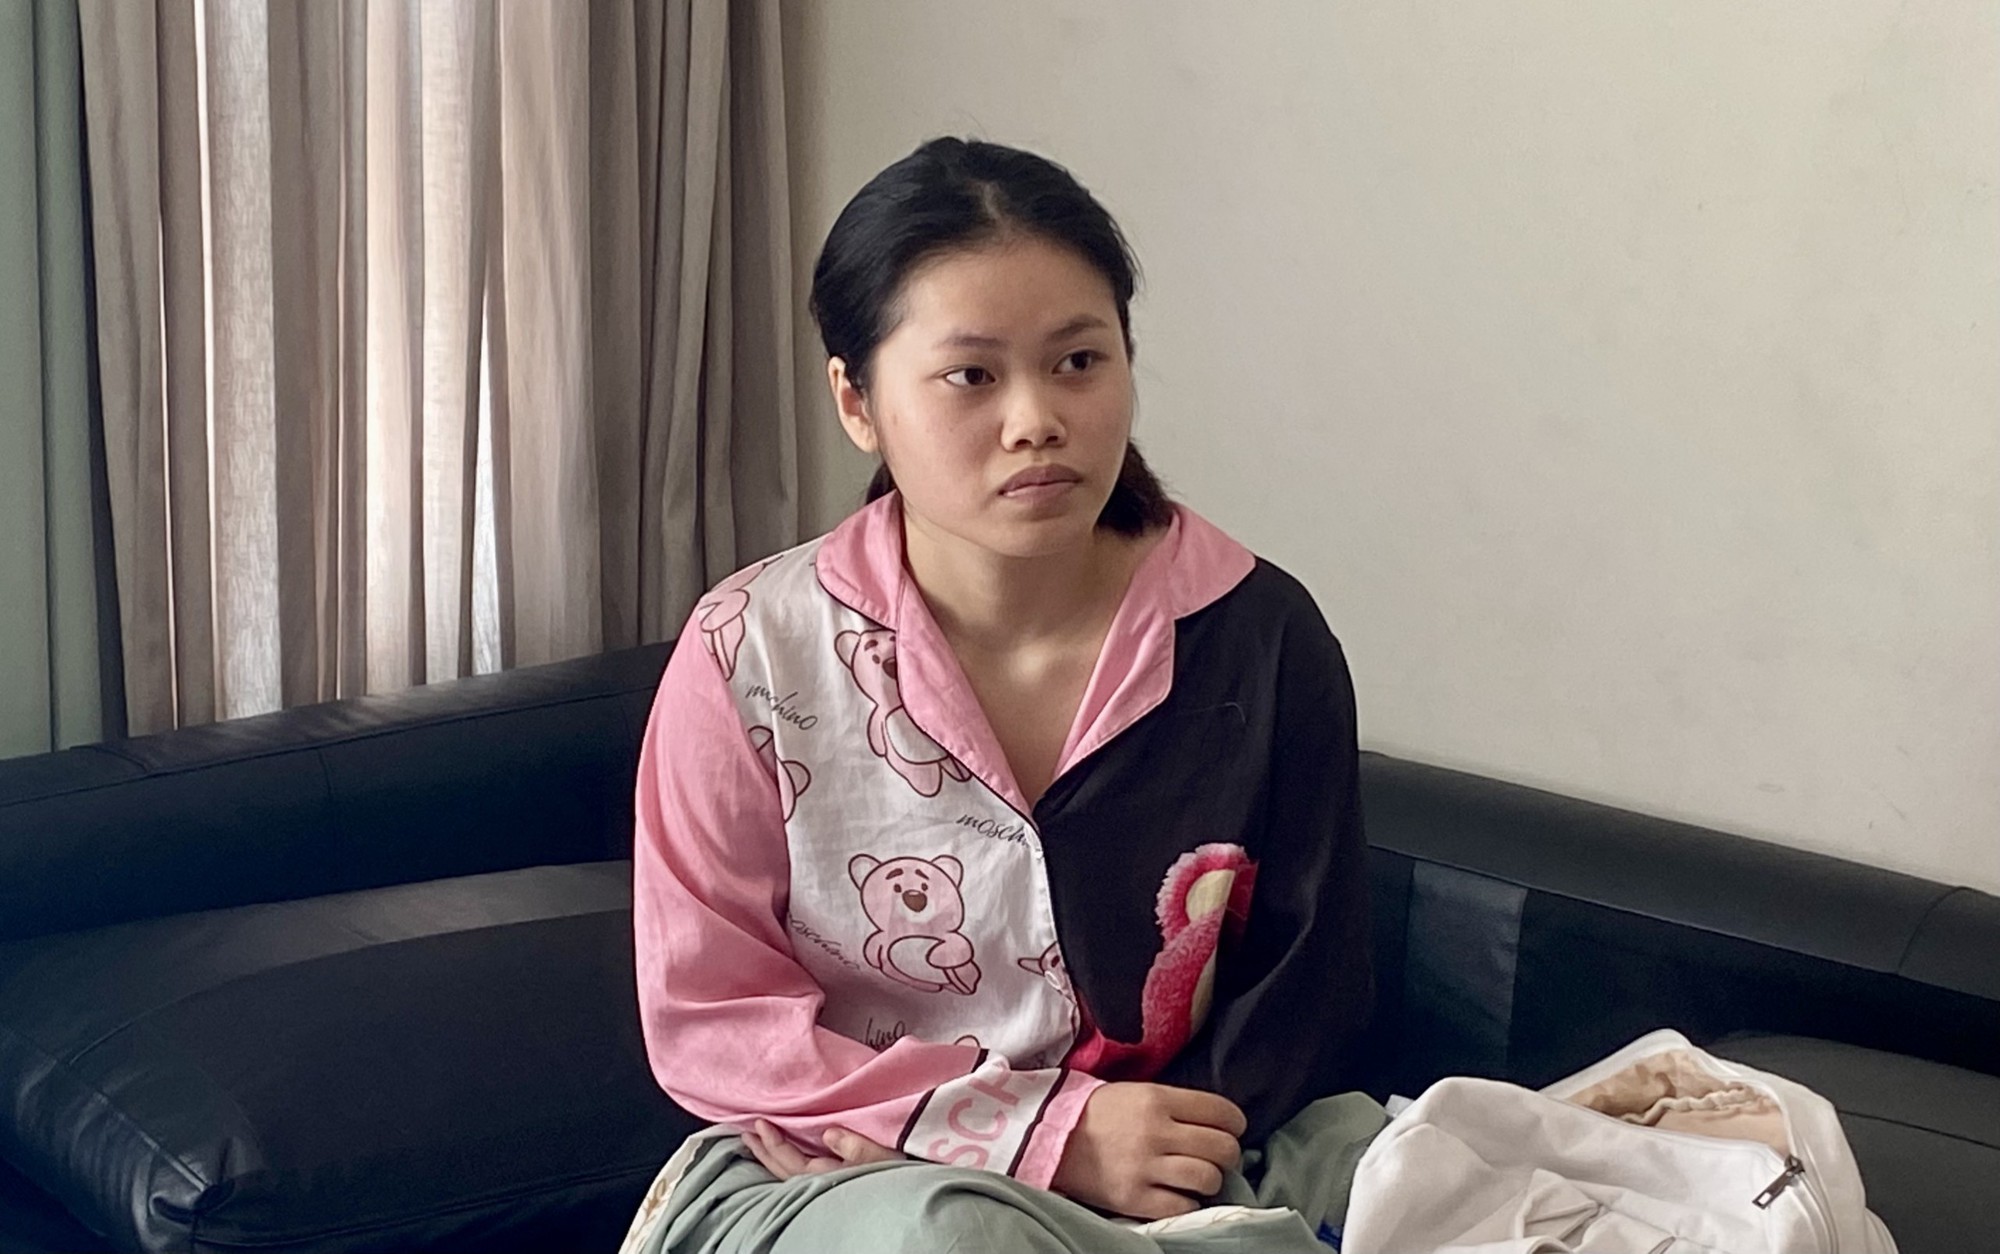 Khởi tố, bắt tạm giam kẻ dẫn dụ 2 bé gái ở phố đi bộ Nguyễn Huệ về tội danh không ngờ- Ảnh 1.